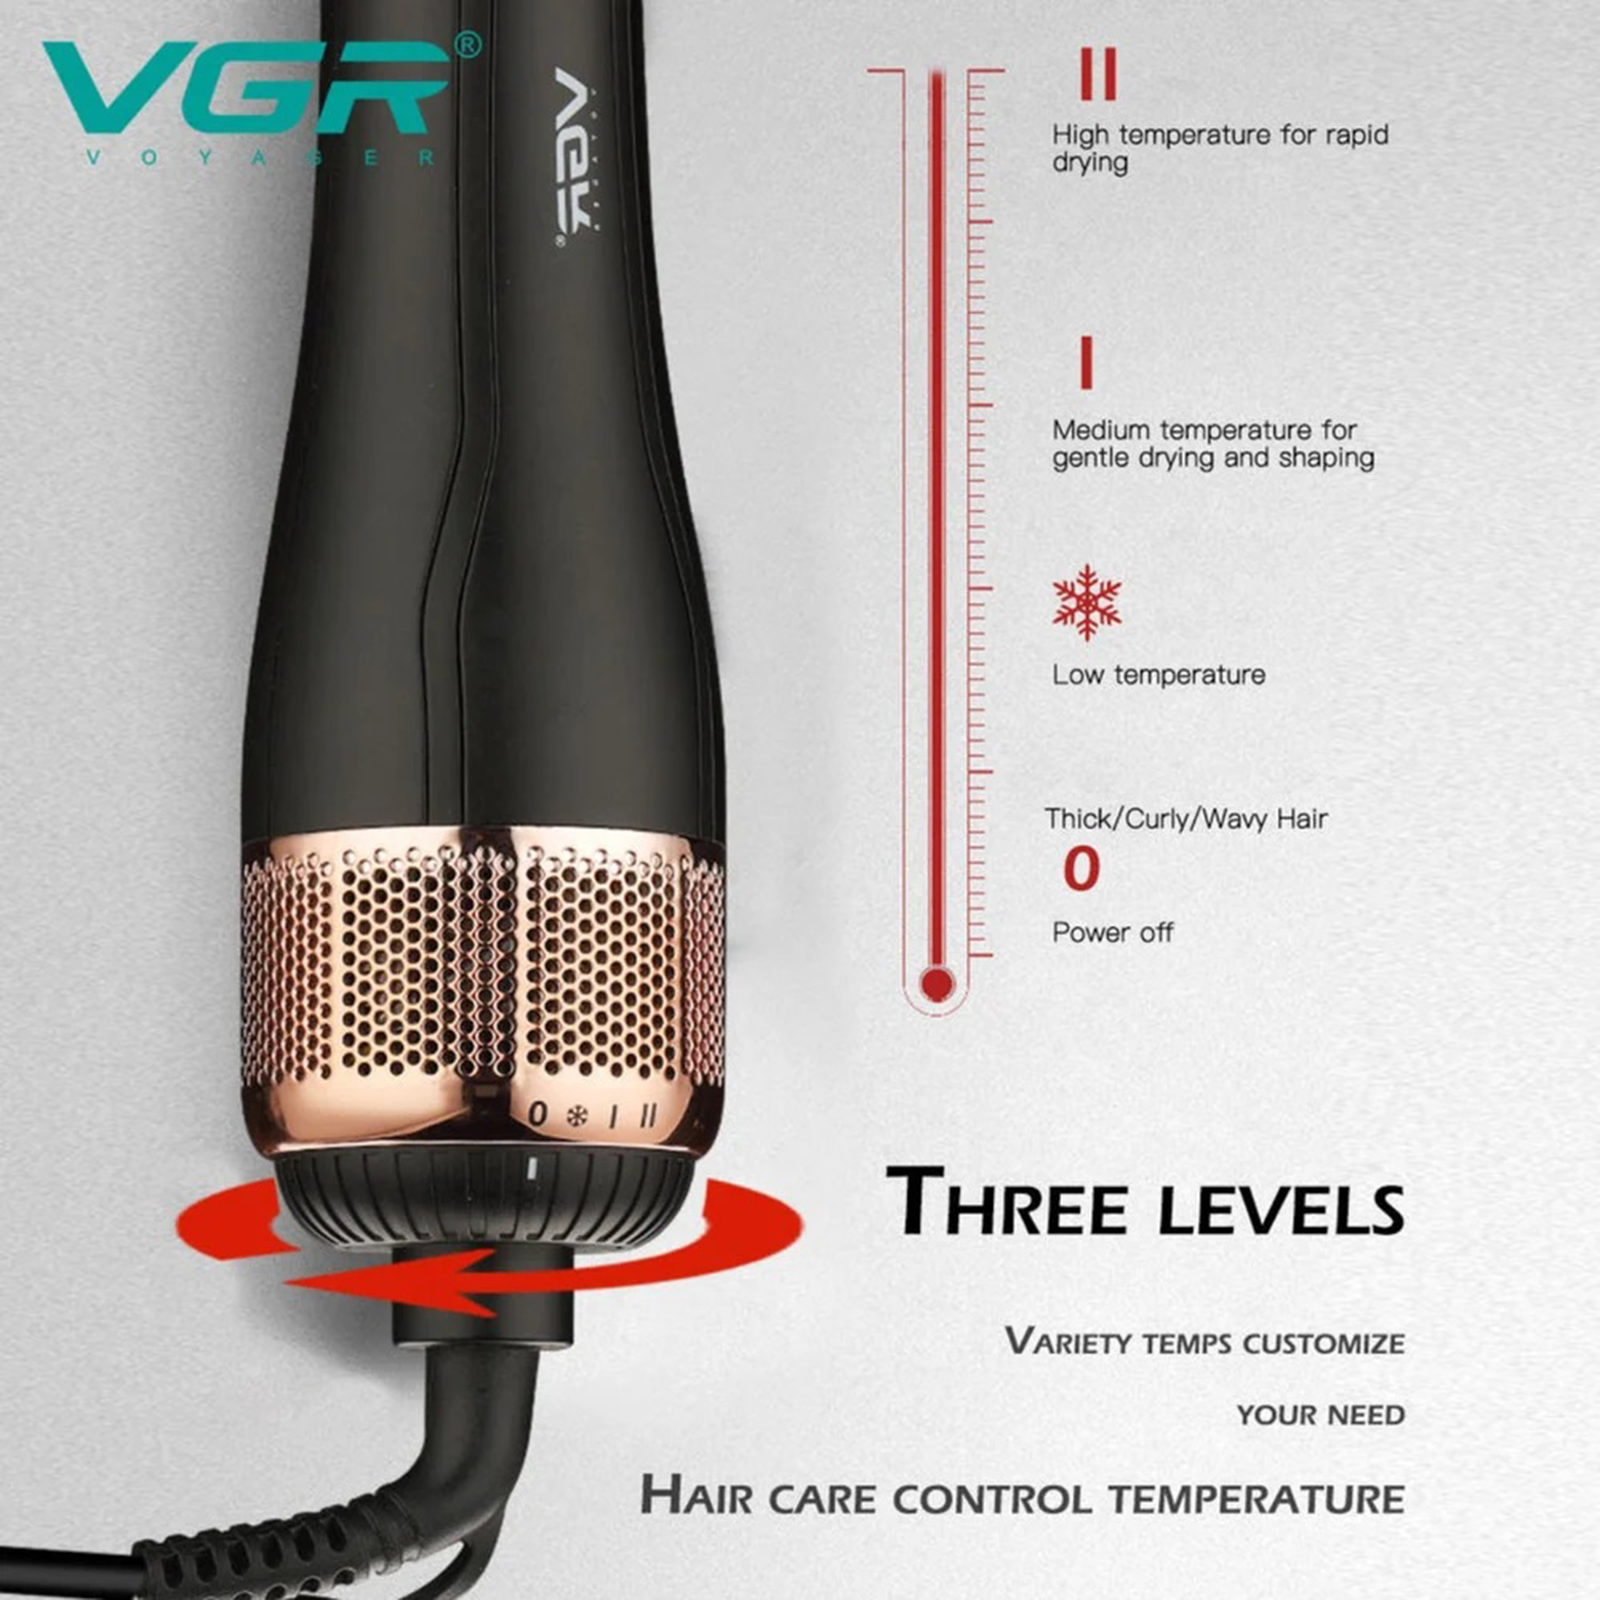 VGR Hair Dryer (360 Degree Swivel Cord, VGR 492, Black)_3